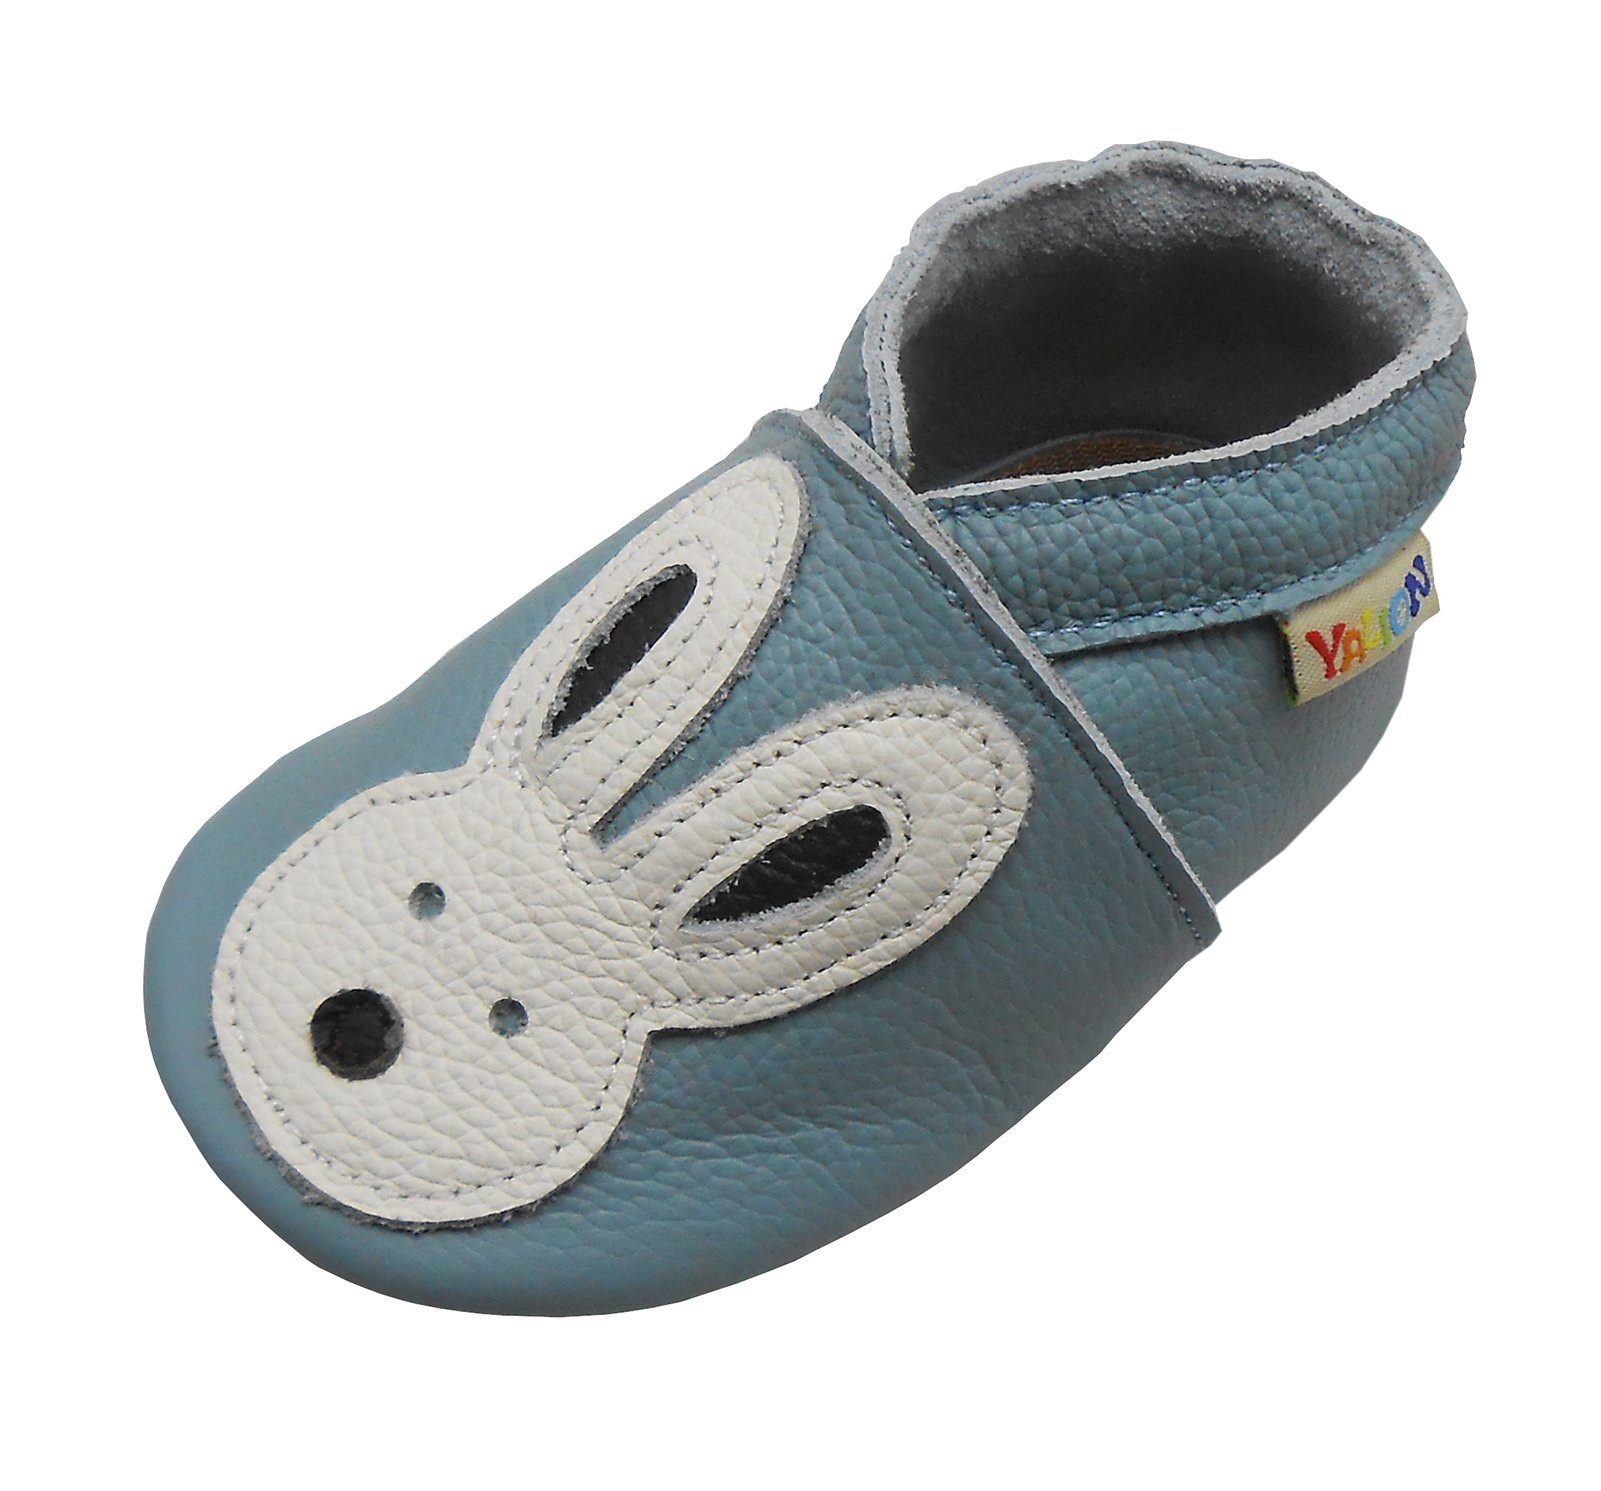 Yalion Weiche Leder Lauflernschuhe Lederpuschen blau Krabbelschuh Hausschuhe Kaninchen